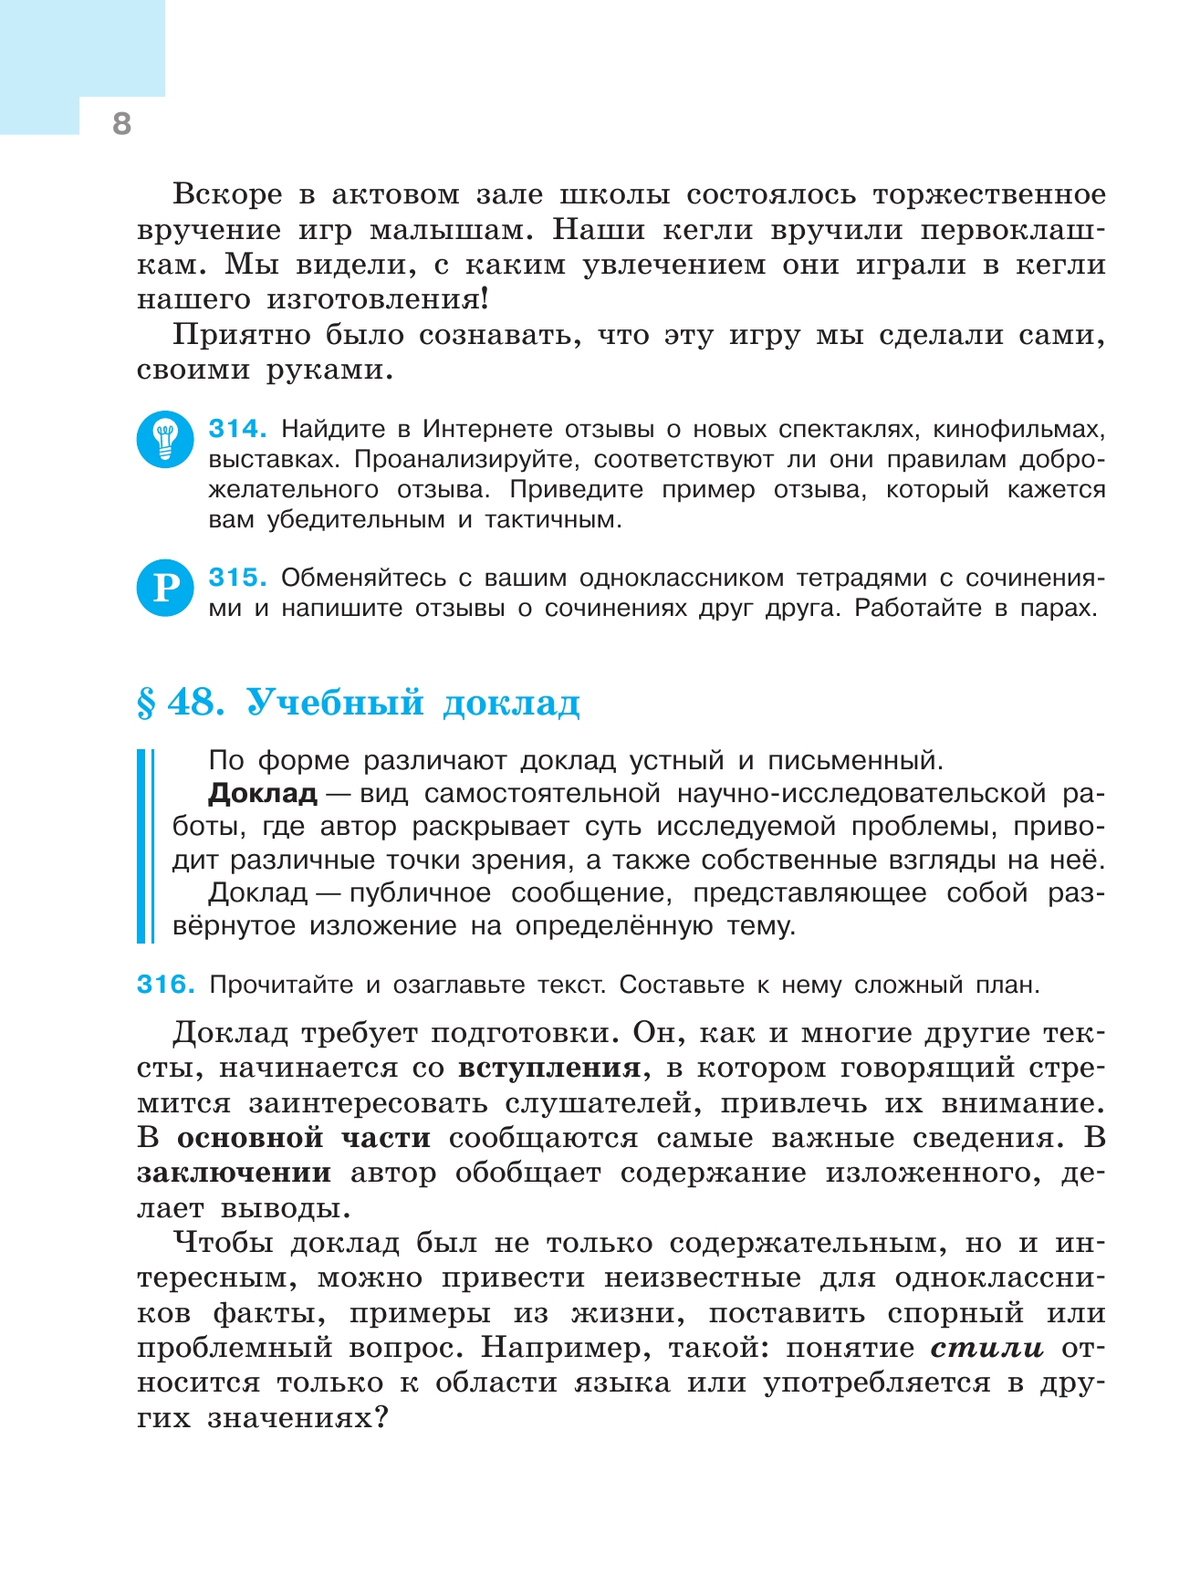 Русский язык. 7 класс. Учебник. В 2 ч. Часть 2 10